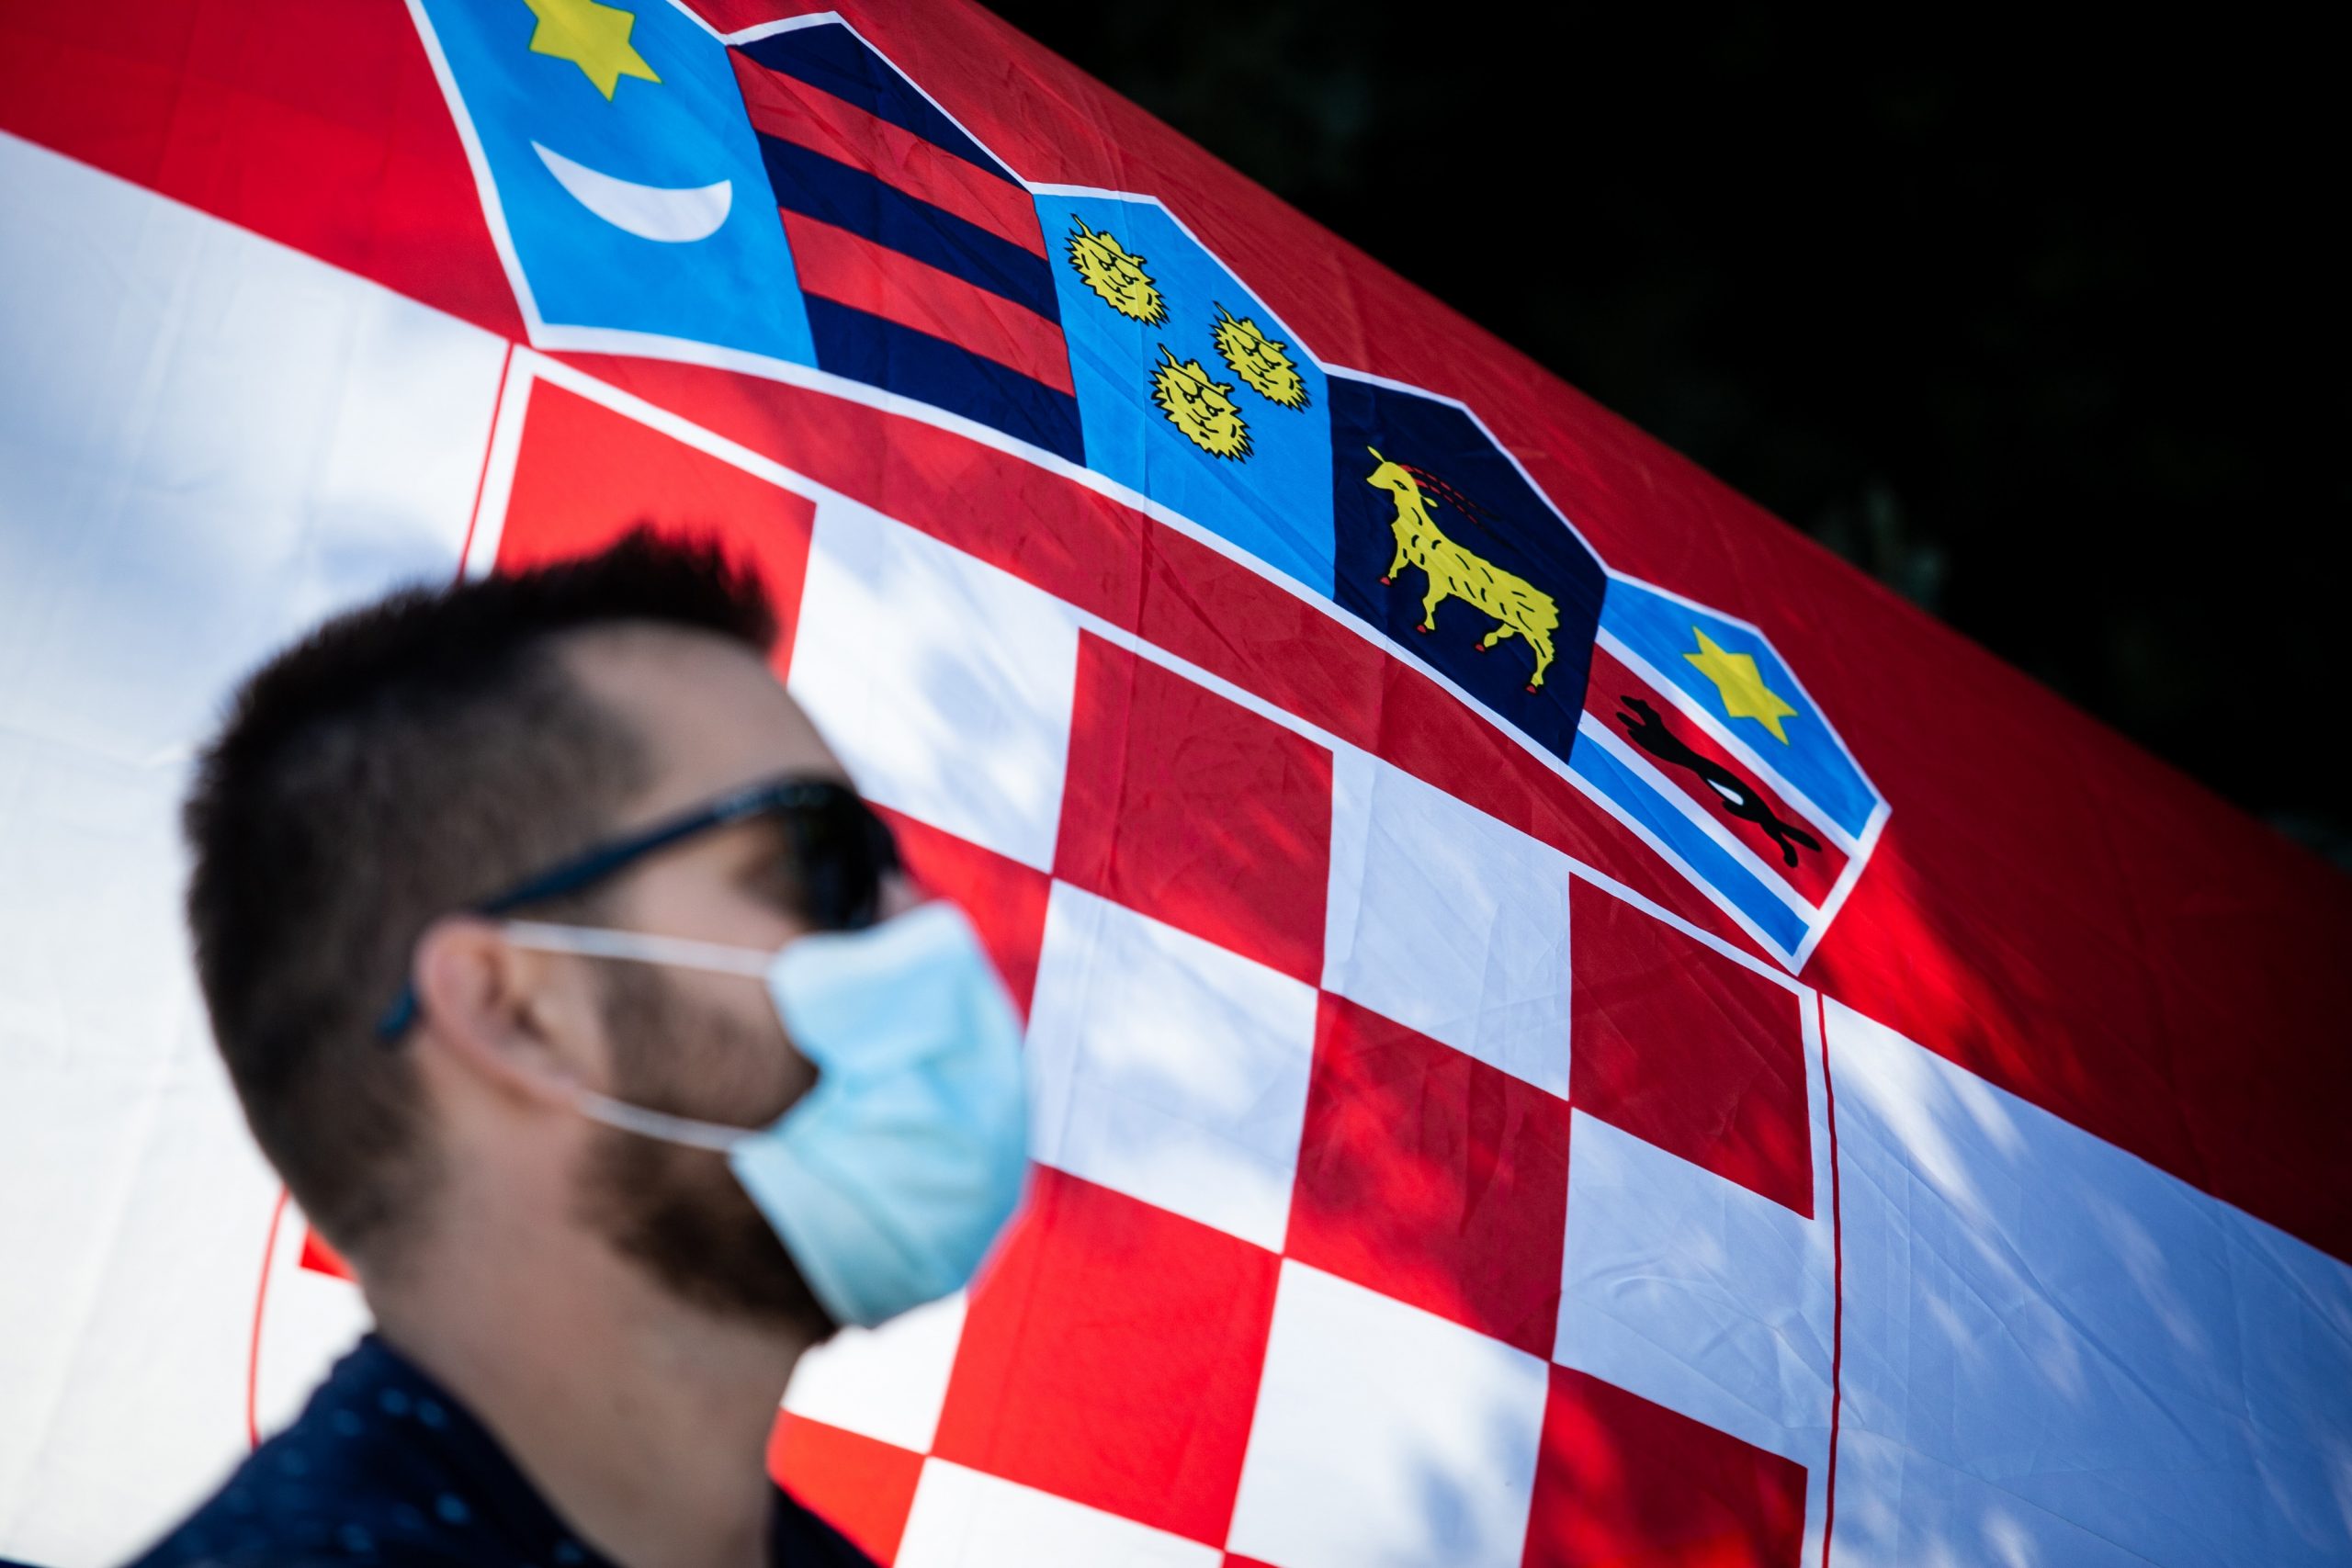 07.09.2020., Split - Ilustracija gradana s maskom ispred hrvatske zastave.
Photo:j Milan Sabic/PIXSELL